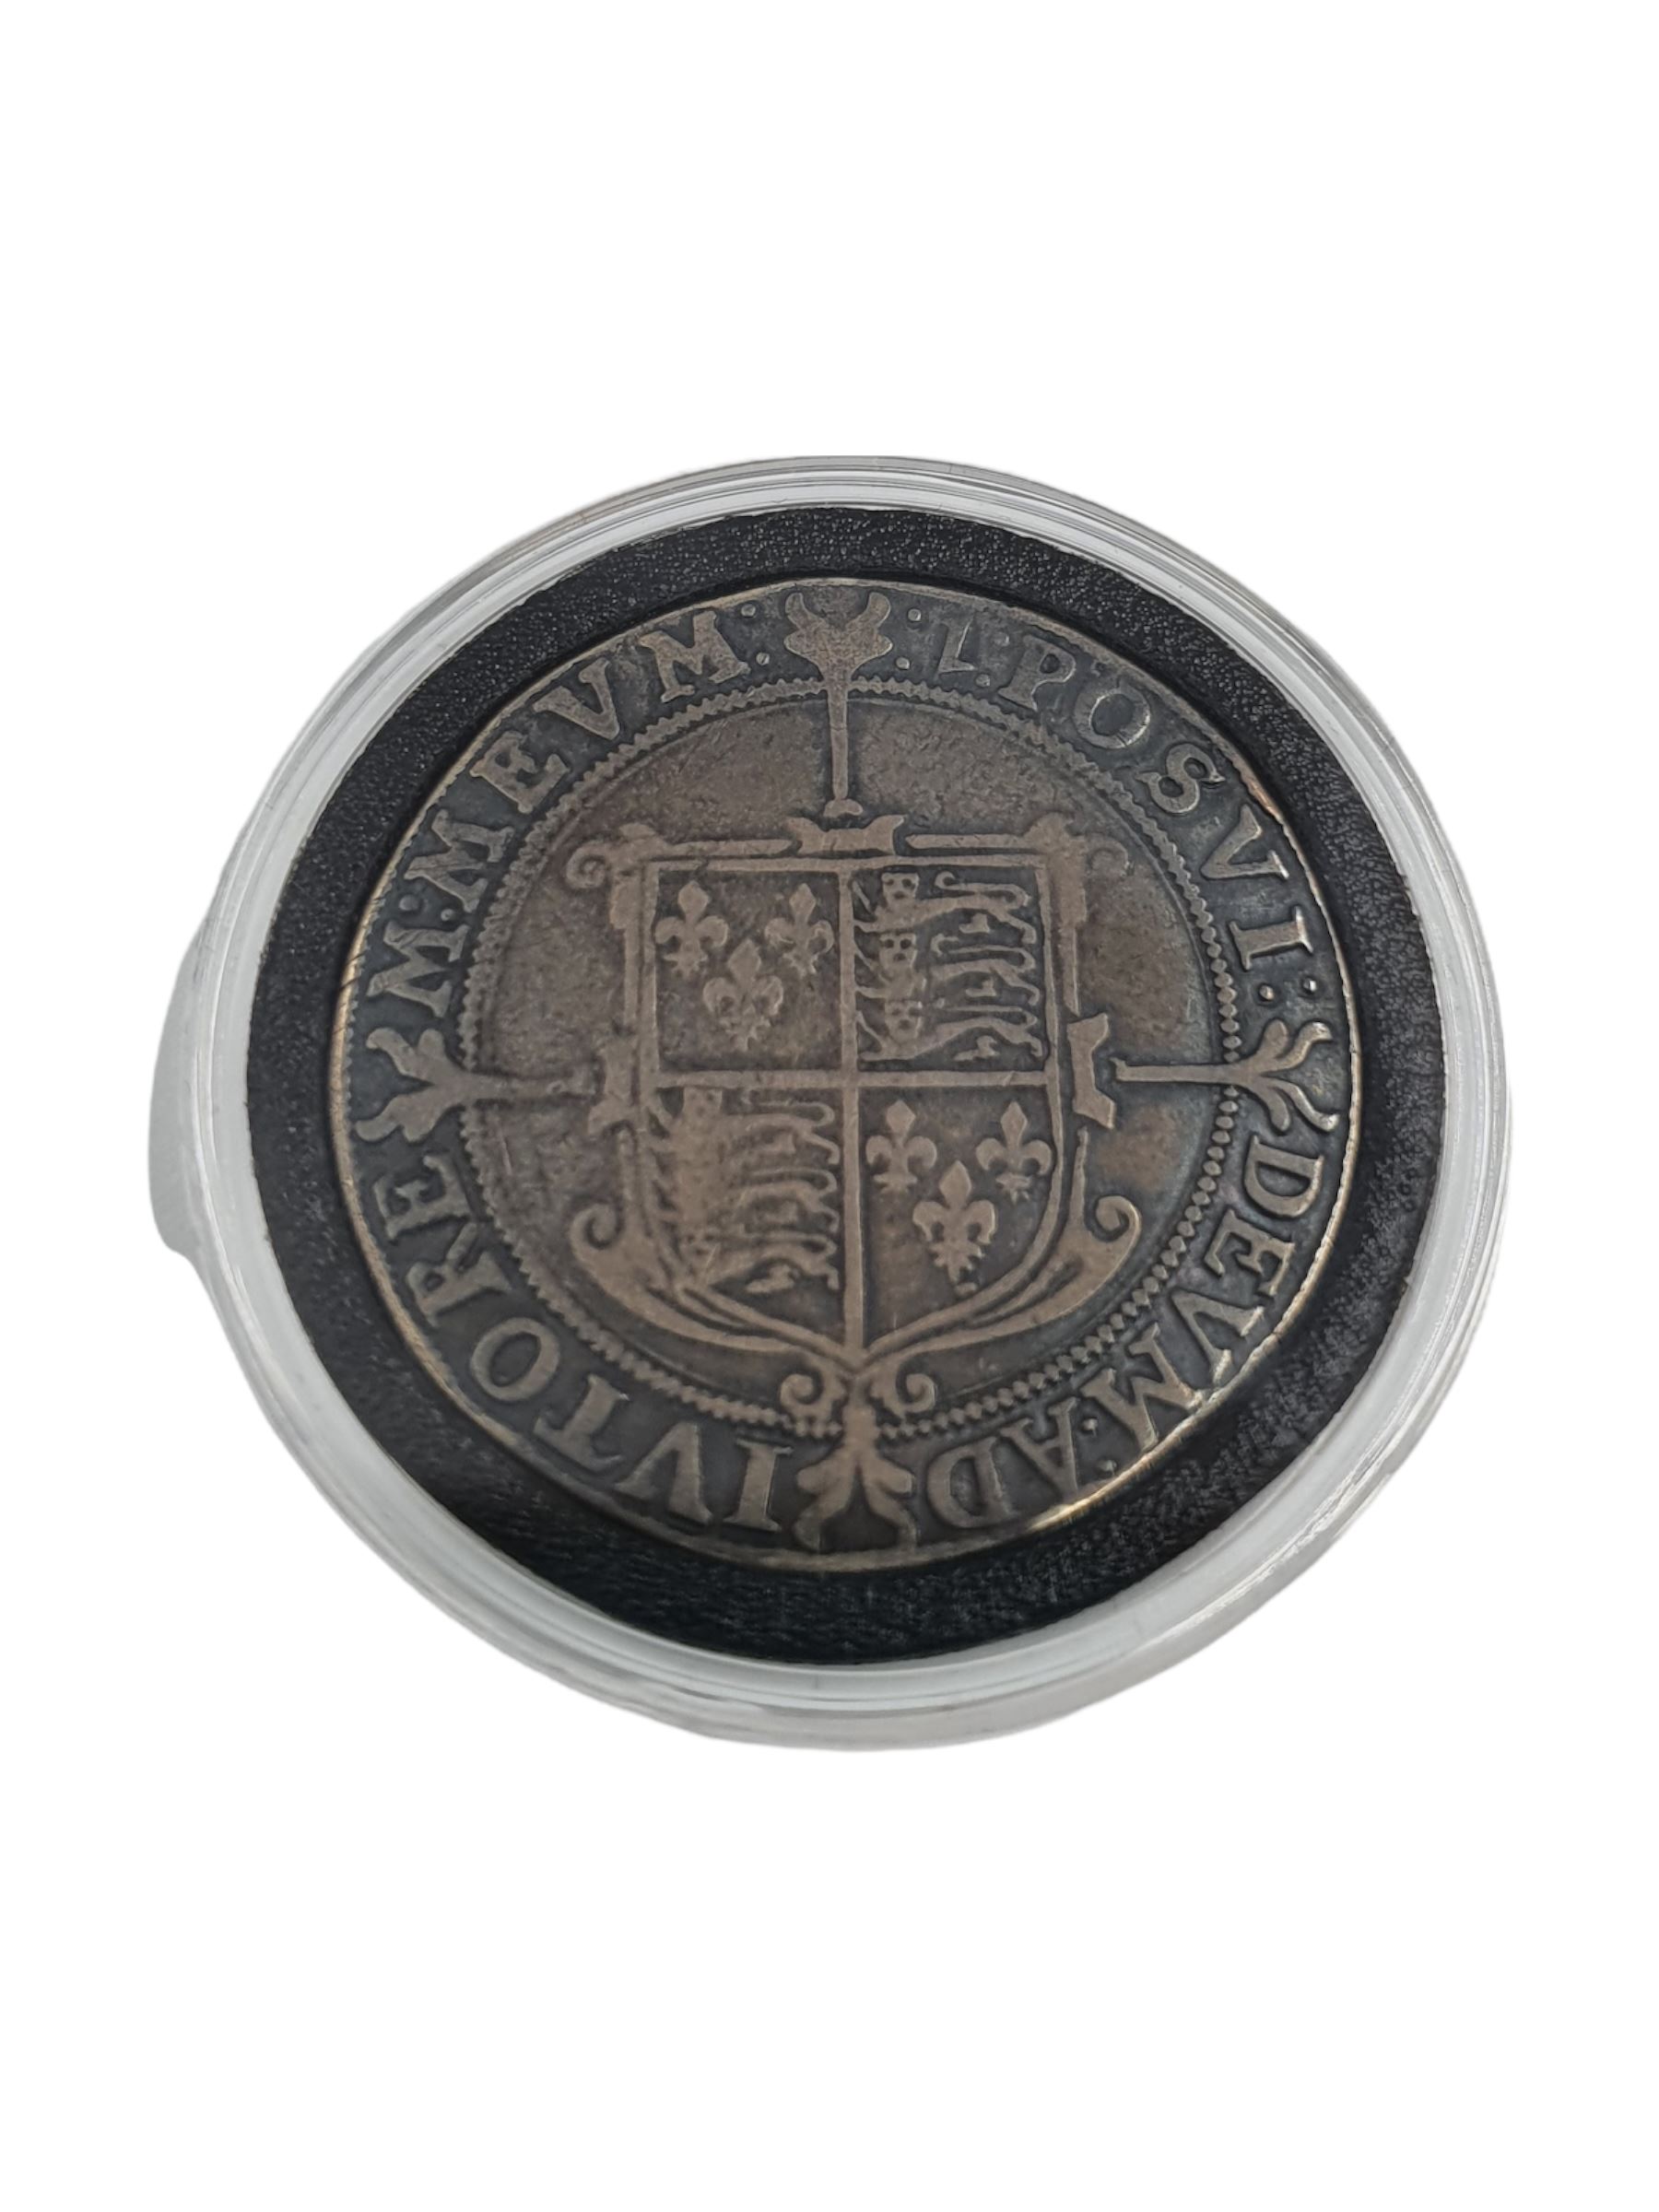 Elizabeth I (1558-1603) silver half crown coin - Image 2 of 3